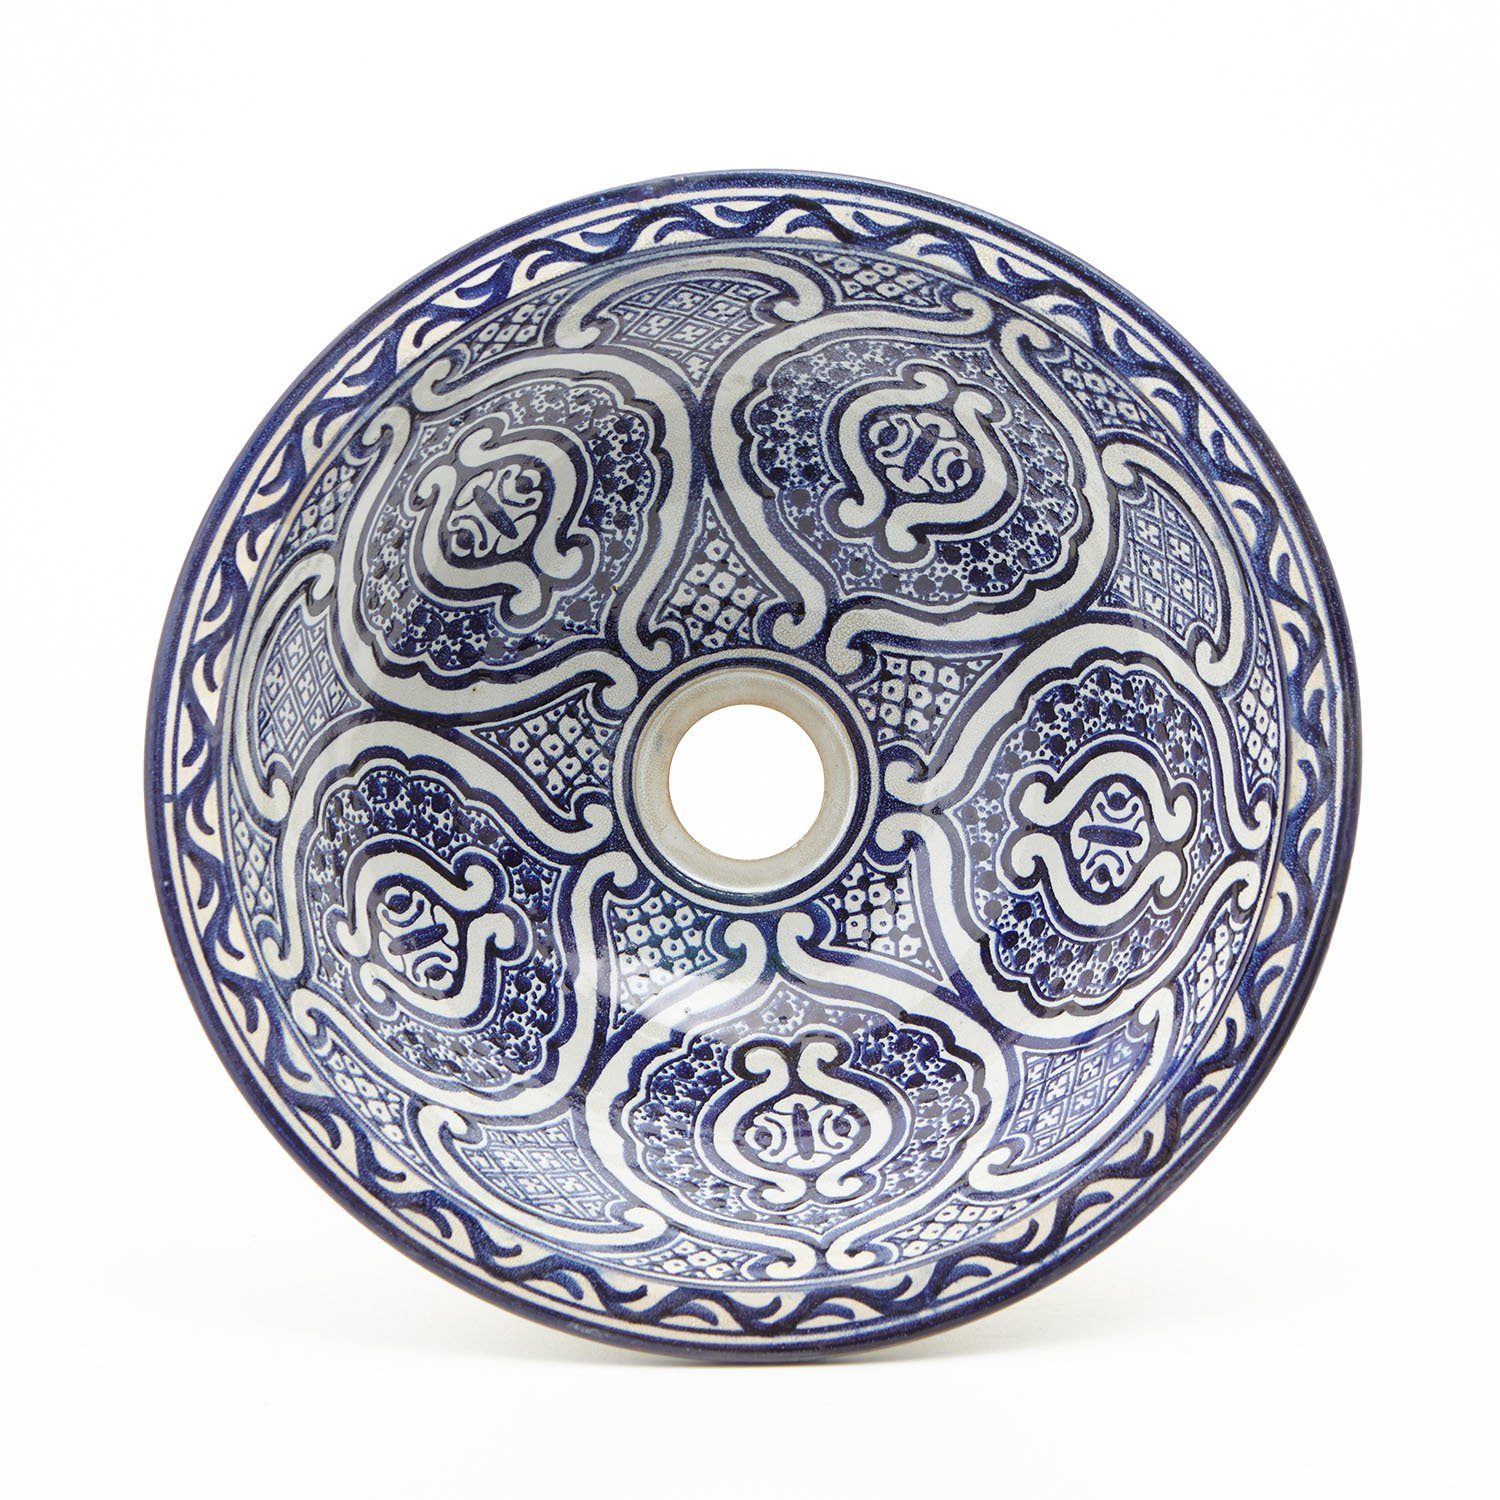 Casa Moro Waschbecken Orientalisches Keramik-Waschbecken Fes70 blau-weiß  handbemalt Ø 35 cm rund, Kunsthandwerk aus Marokko, Handwaschbecken für Bad  Waschtisch Gäste-WC, WB35270, Handmade